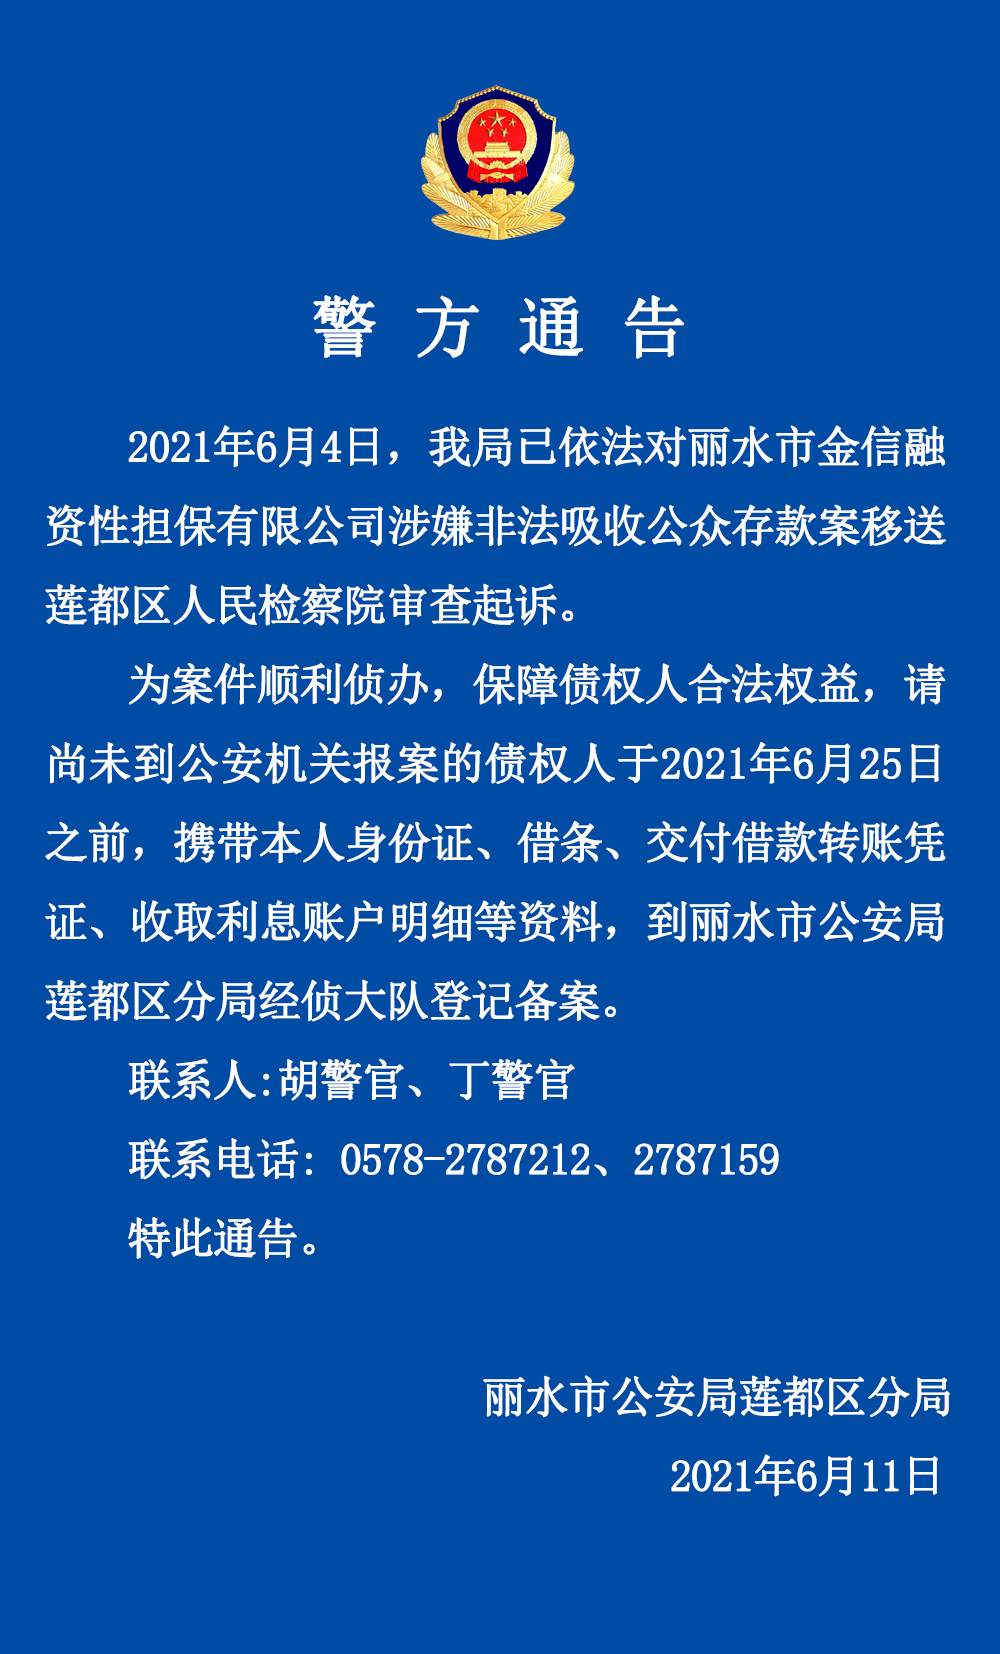 丽水百事通官方客户端118114号码百事通官网